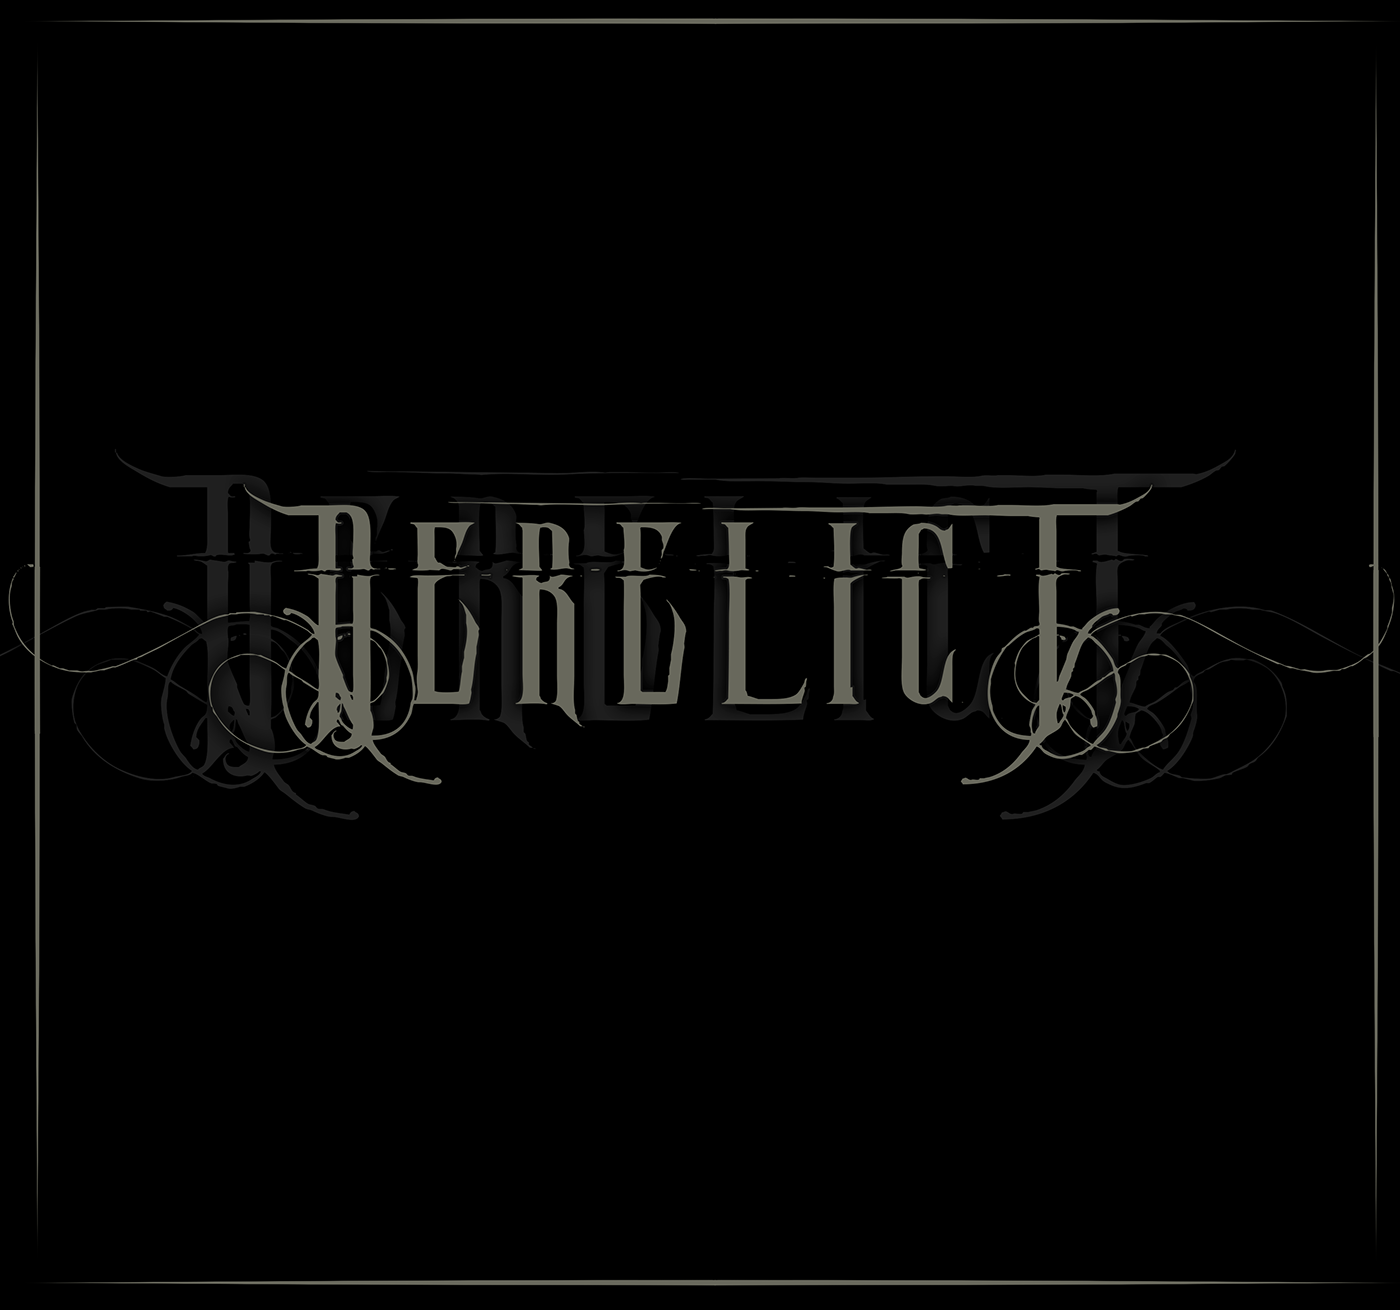 death metal black metal lettering Logo Design deathcore Deathmetal Blackmetal metal